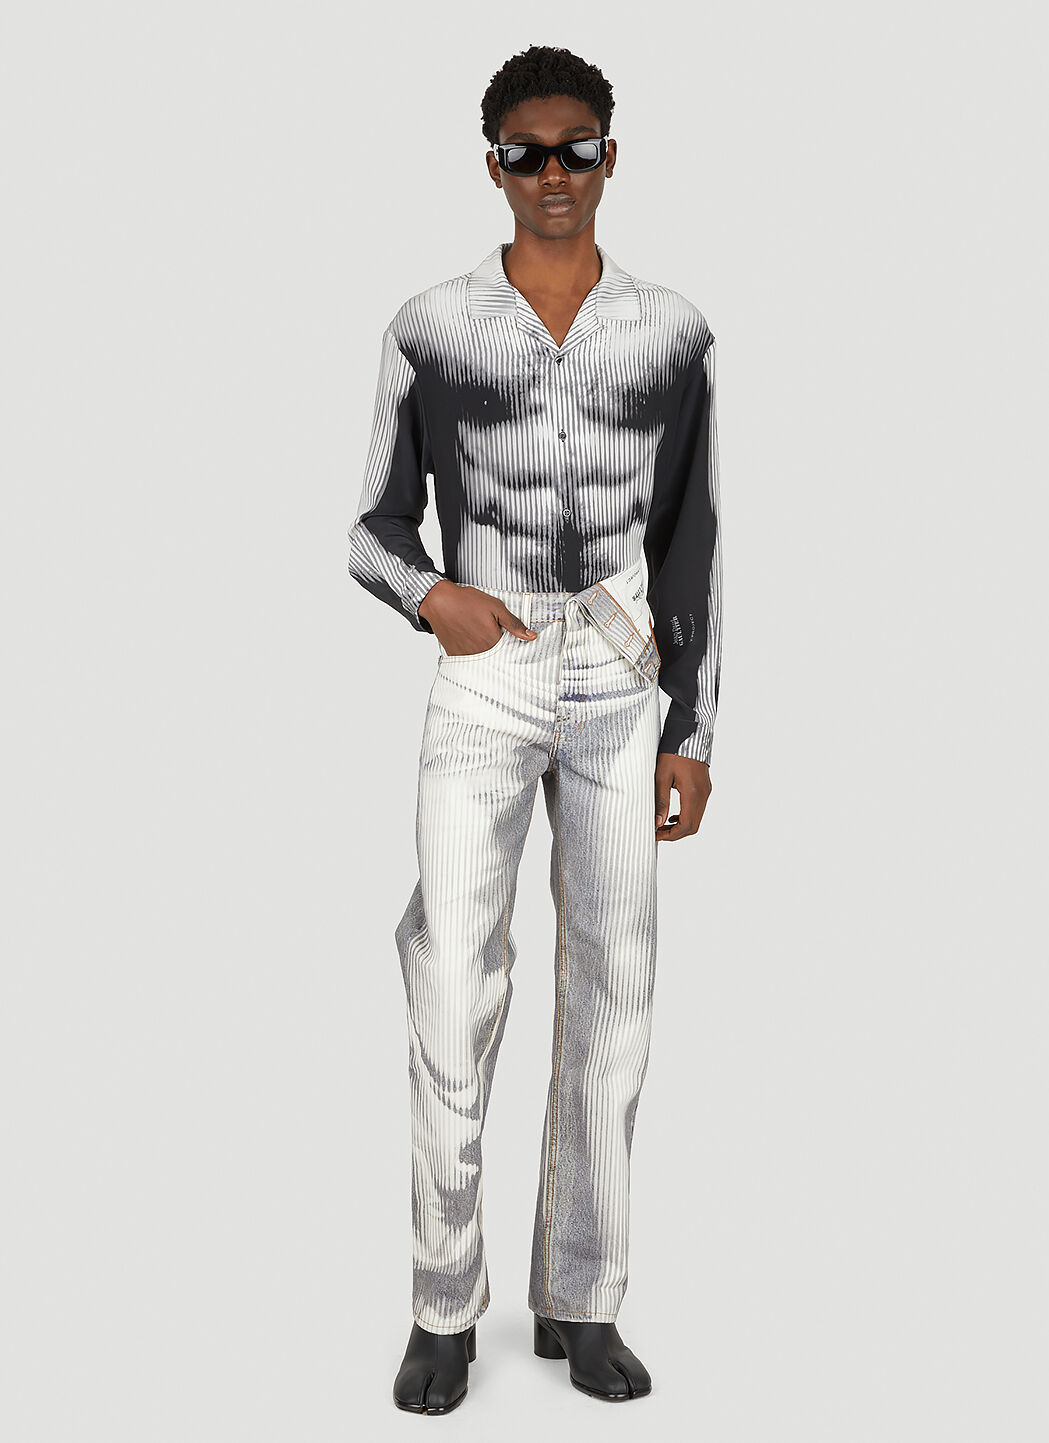 売上値引高 yproject jeanpaulgatier bodymorph pants - メンズ